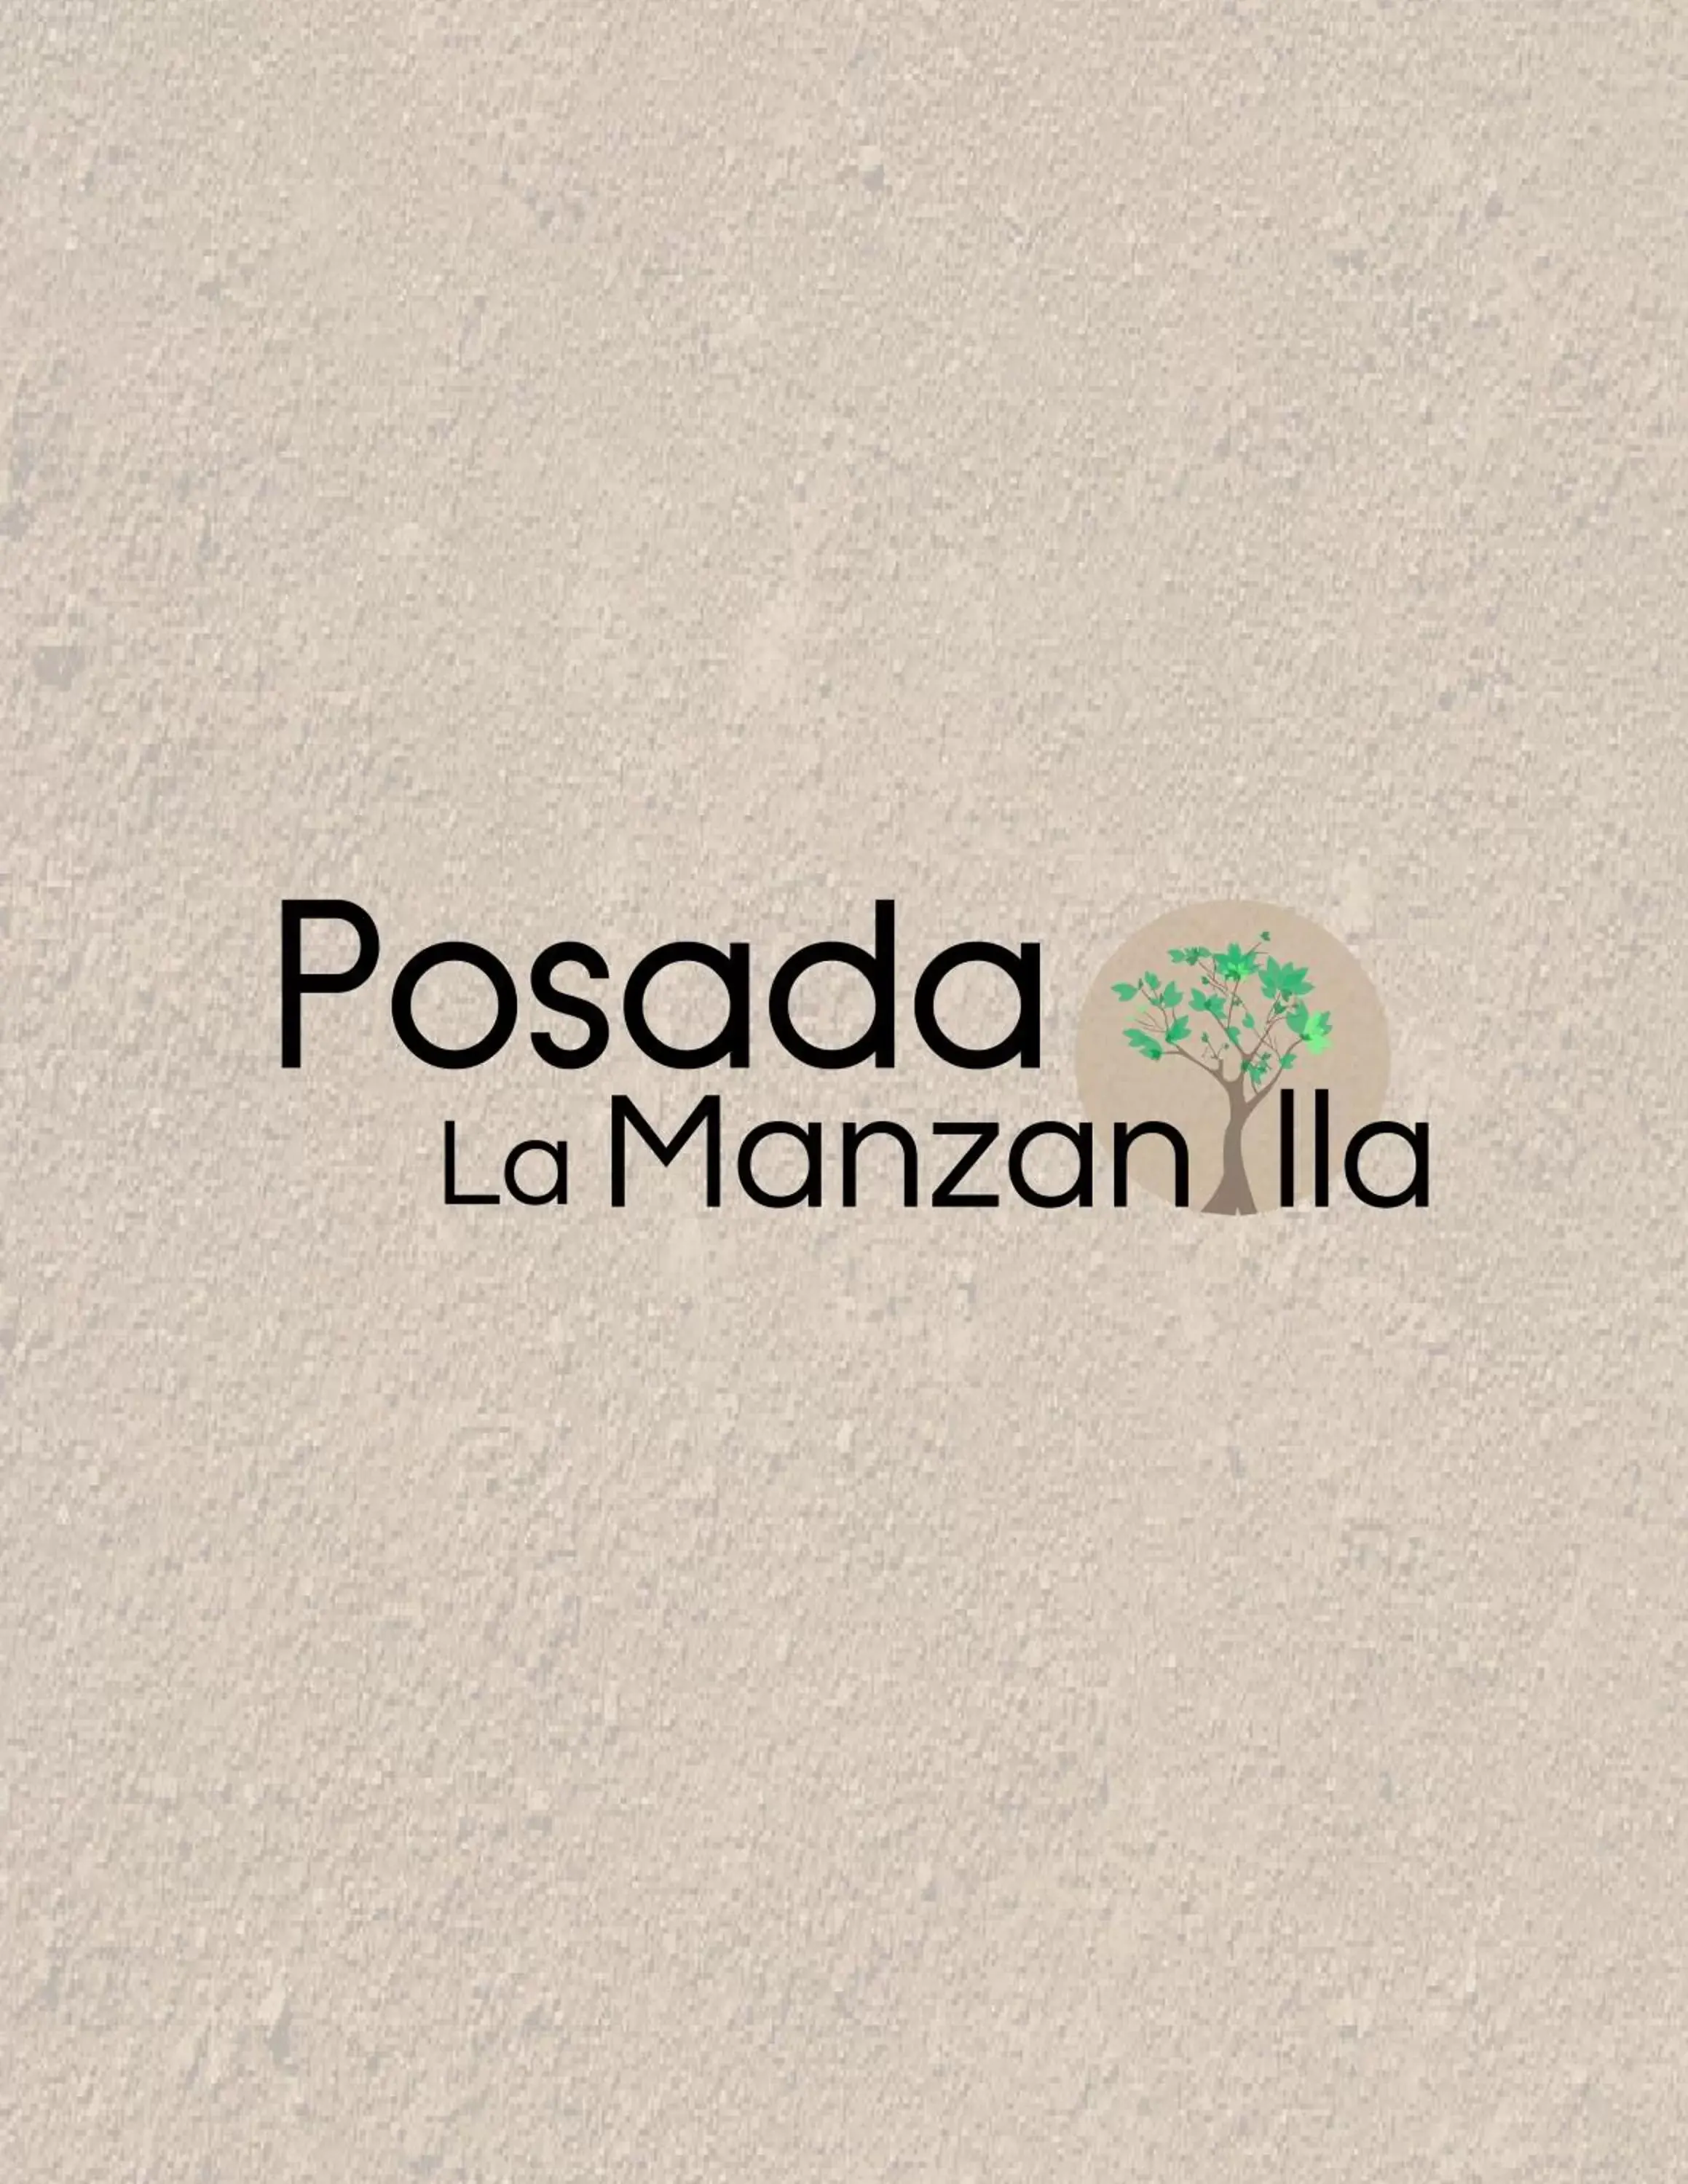 Logo/Certificate/Sign in Posada la Manzanilla